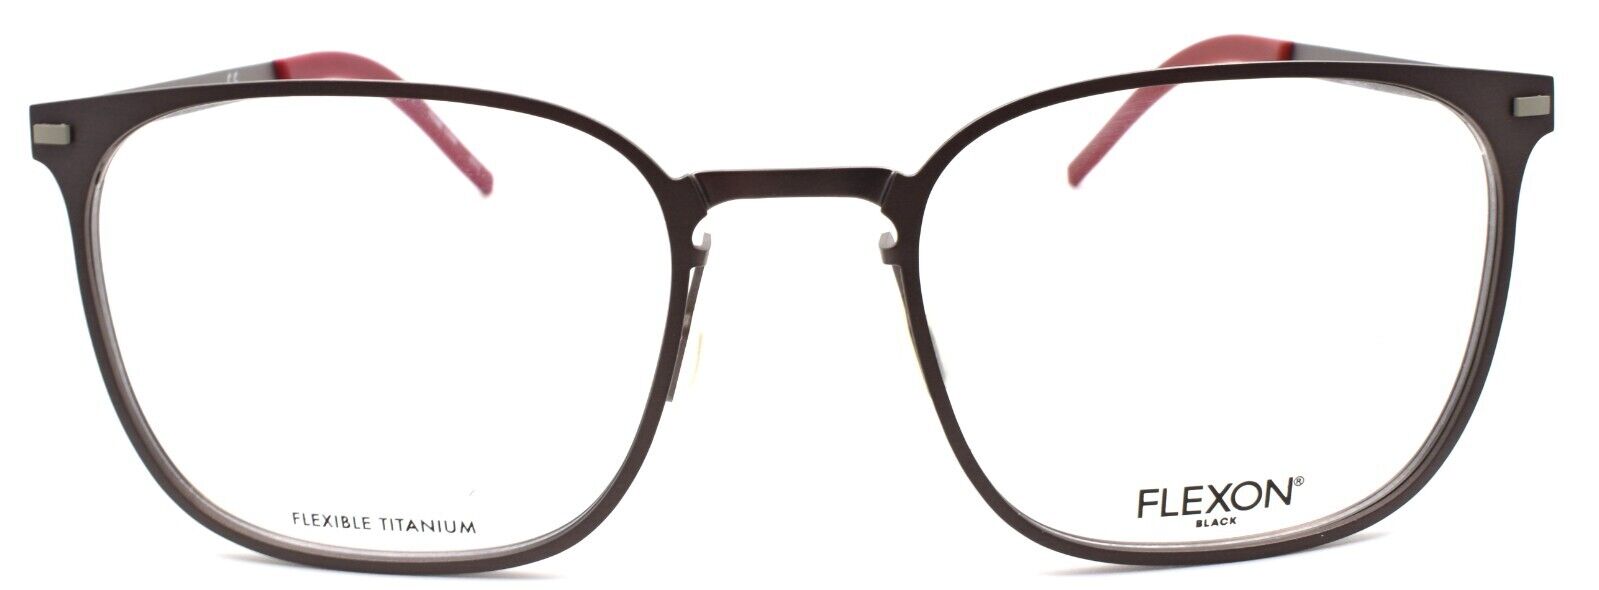 2-Flexon B2029 033 Men's Eyeglasses Gunmetal 53-20-145 Flexible Titanium-883900204620-IKSpecs